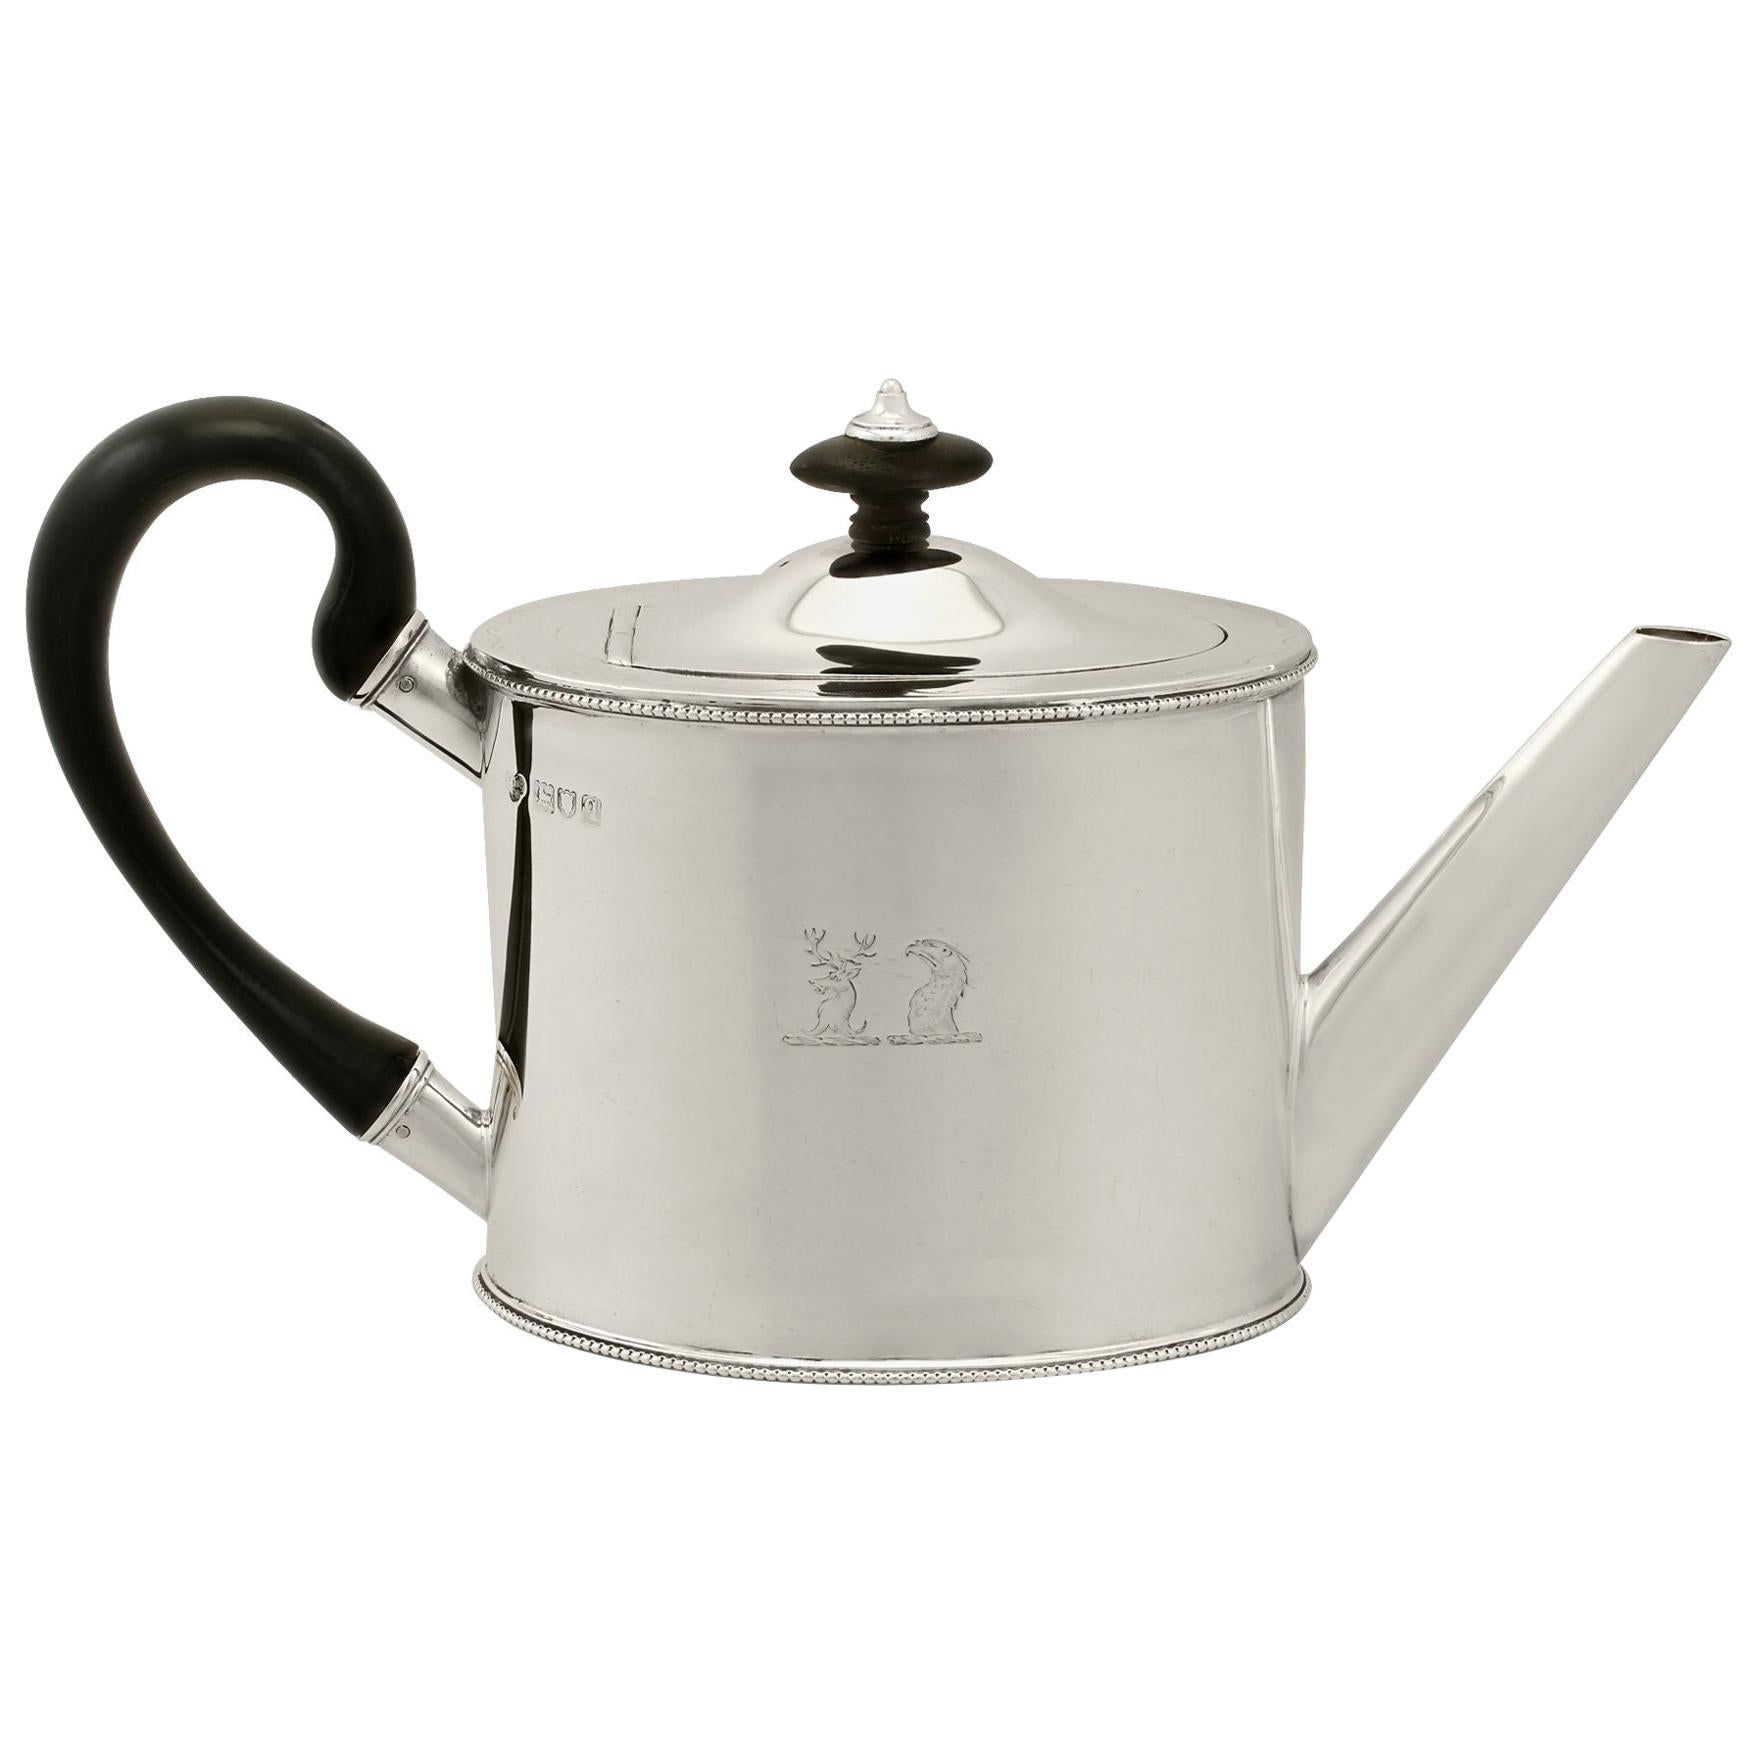 Sterling Silver Bachelor Teapot, Antique George V